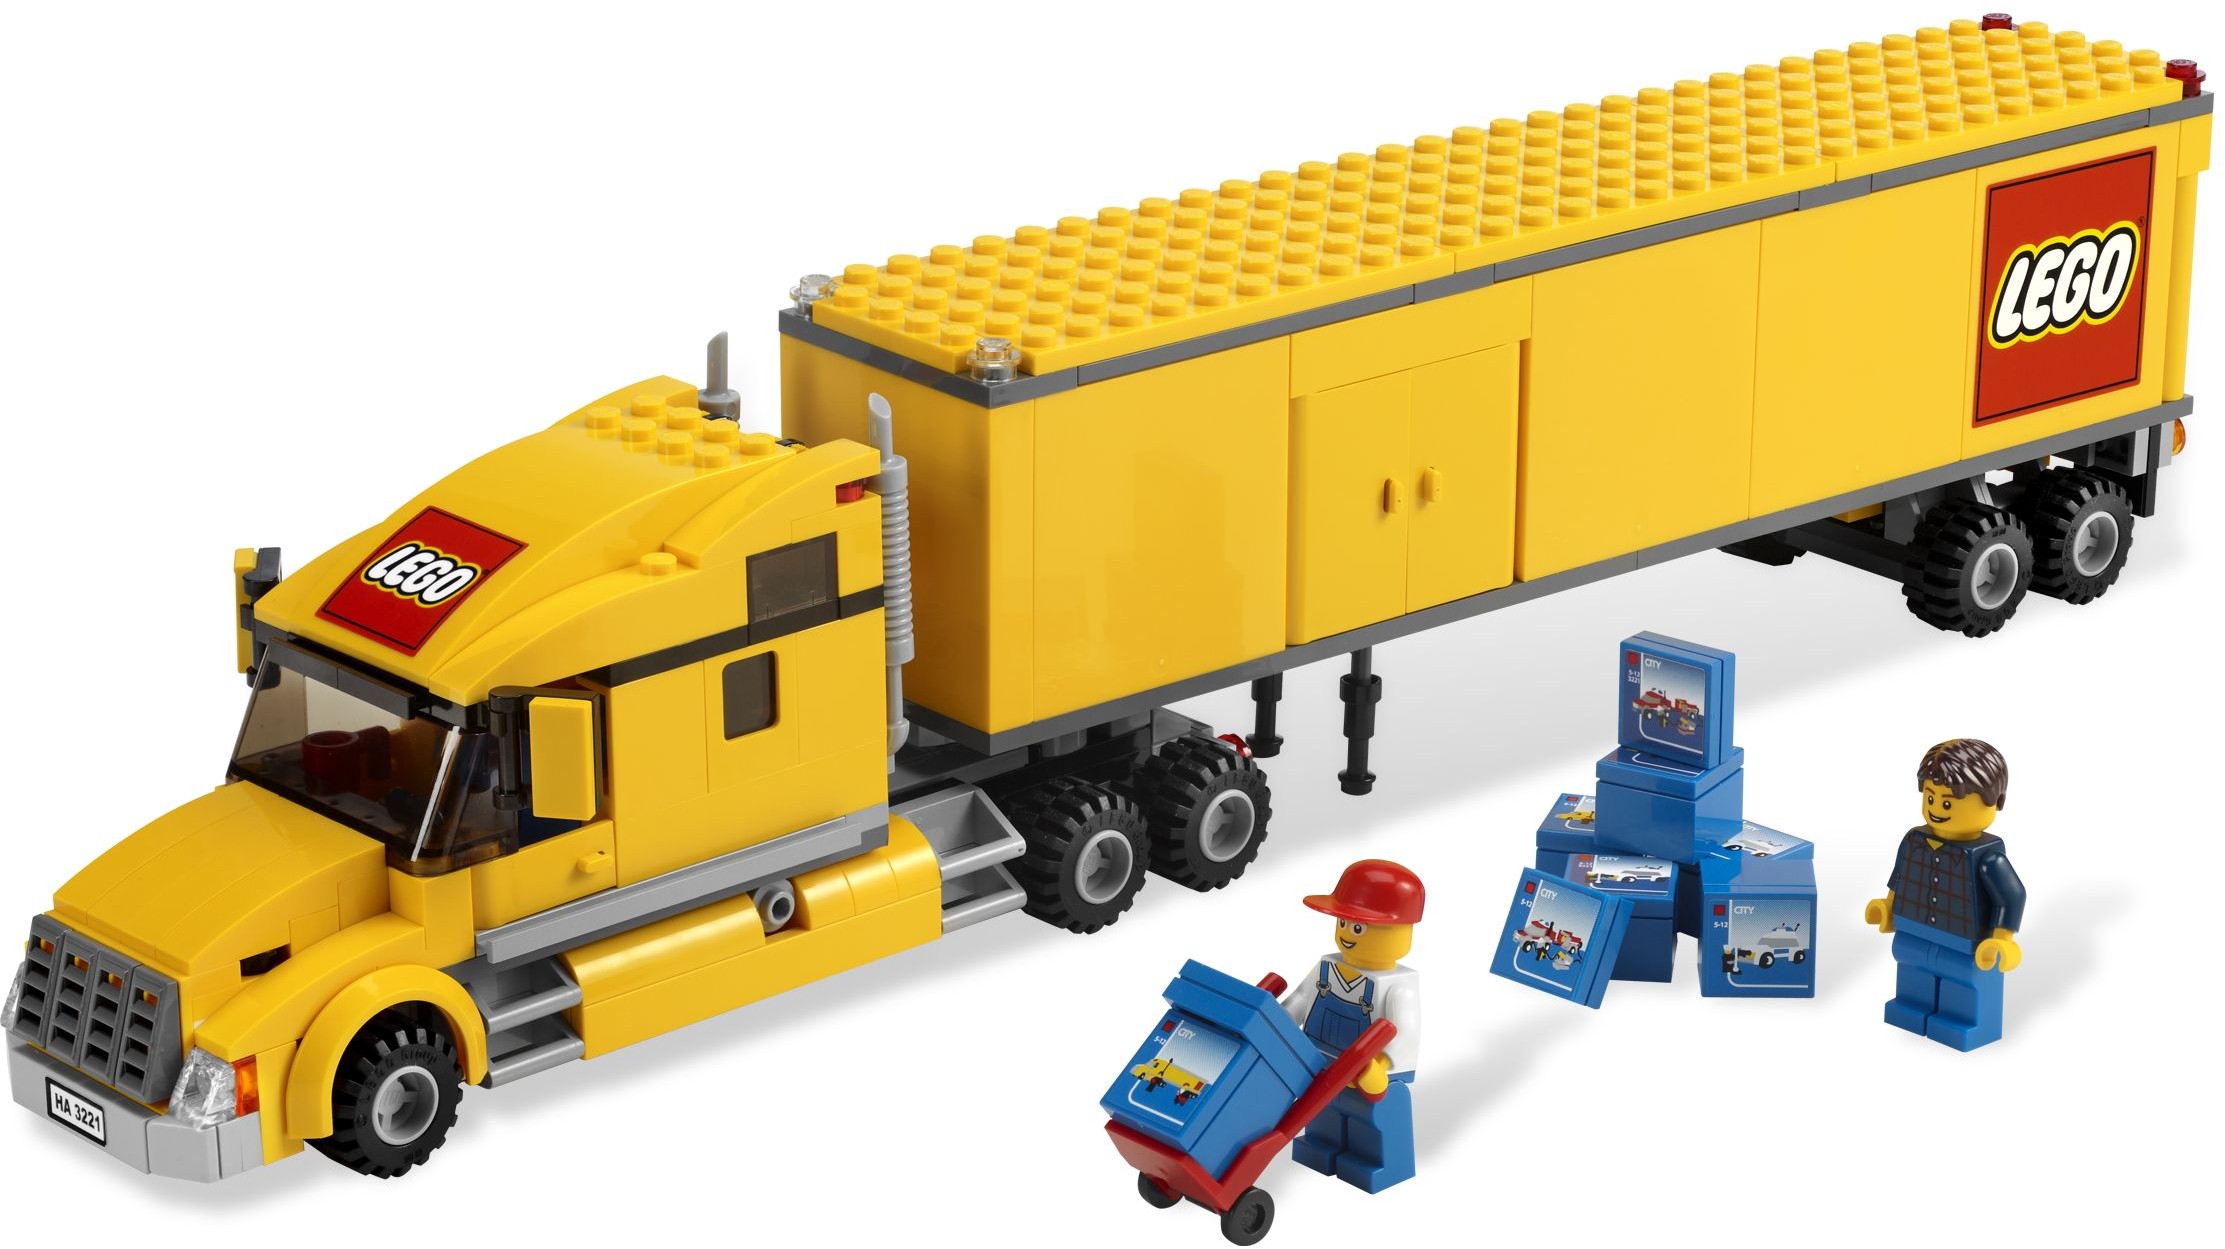 City | Brickset: LEGO set guide database